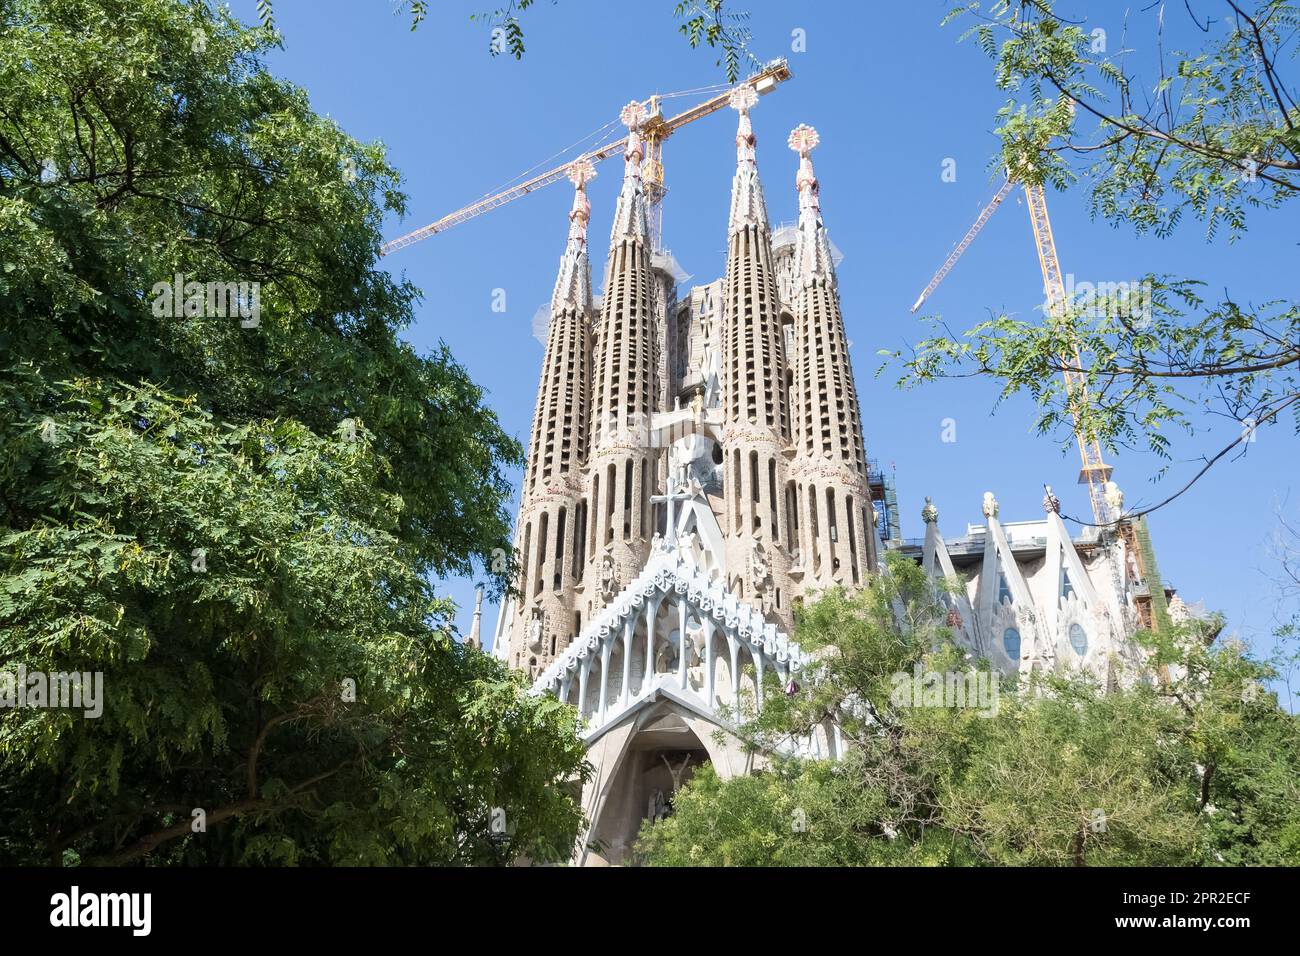 Détail architectural de la Sagrada Família, la plus grande église catholique inachevée du monde située à Eixample, conçue par Antoni Gaudí Banque D'Images